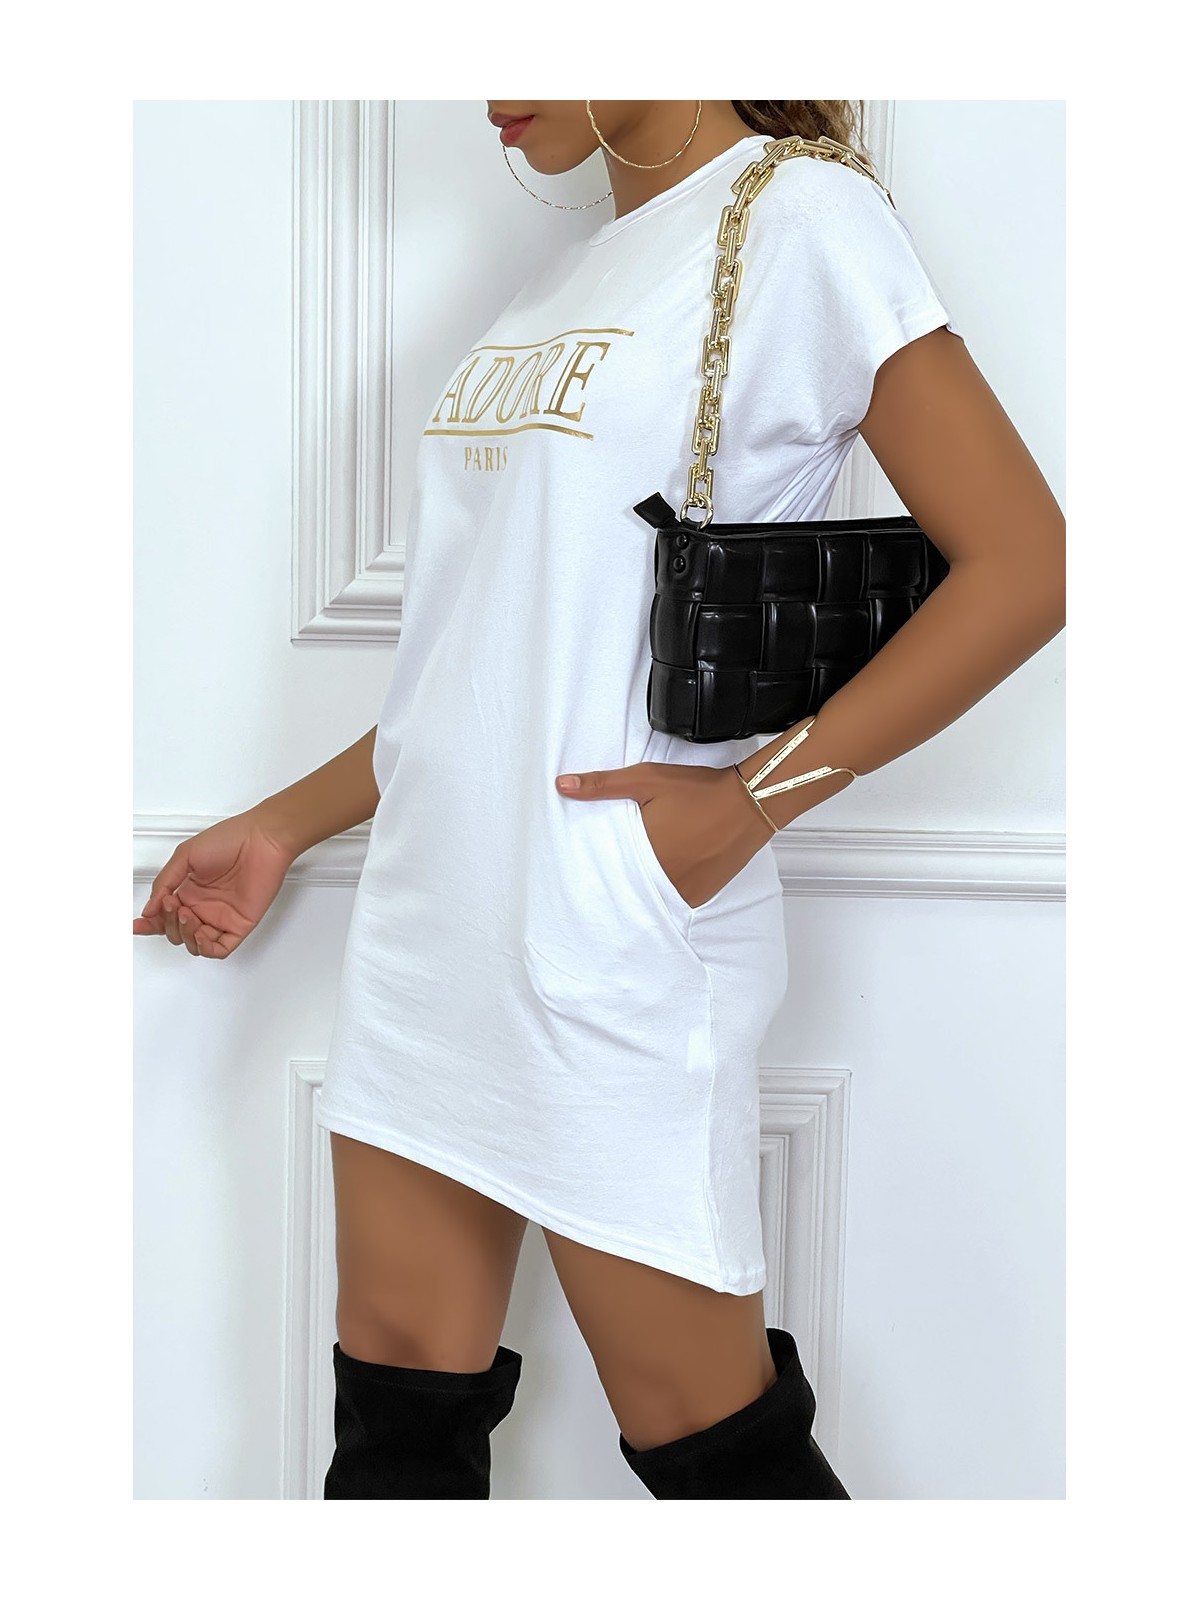 Robe T-shirt courte asymétrique blanc avec écriture doré "J'adore" et poches - 5